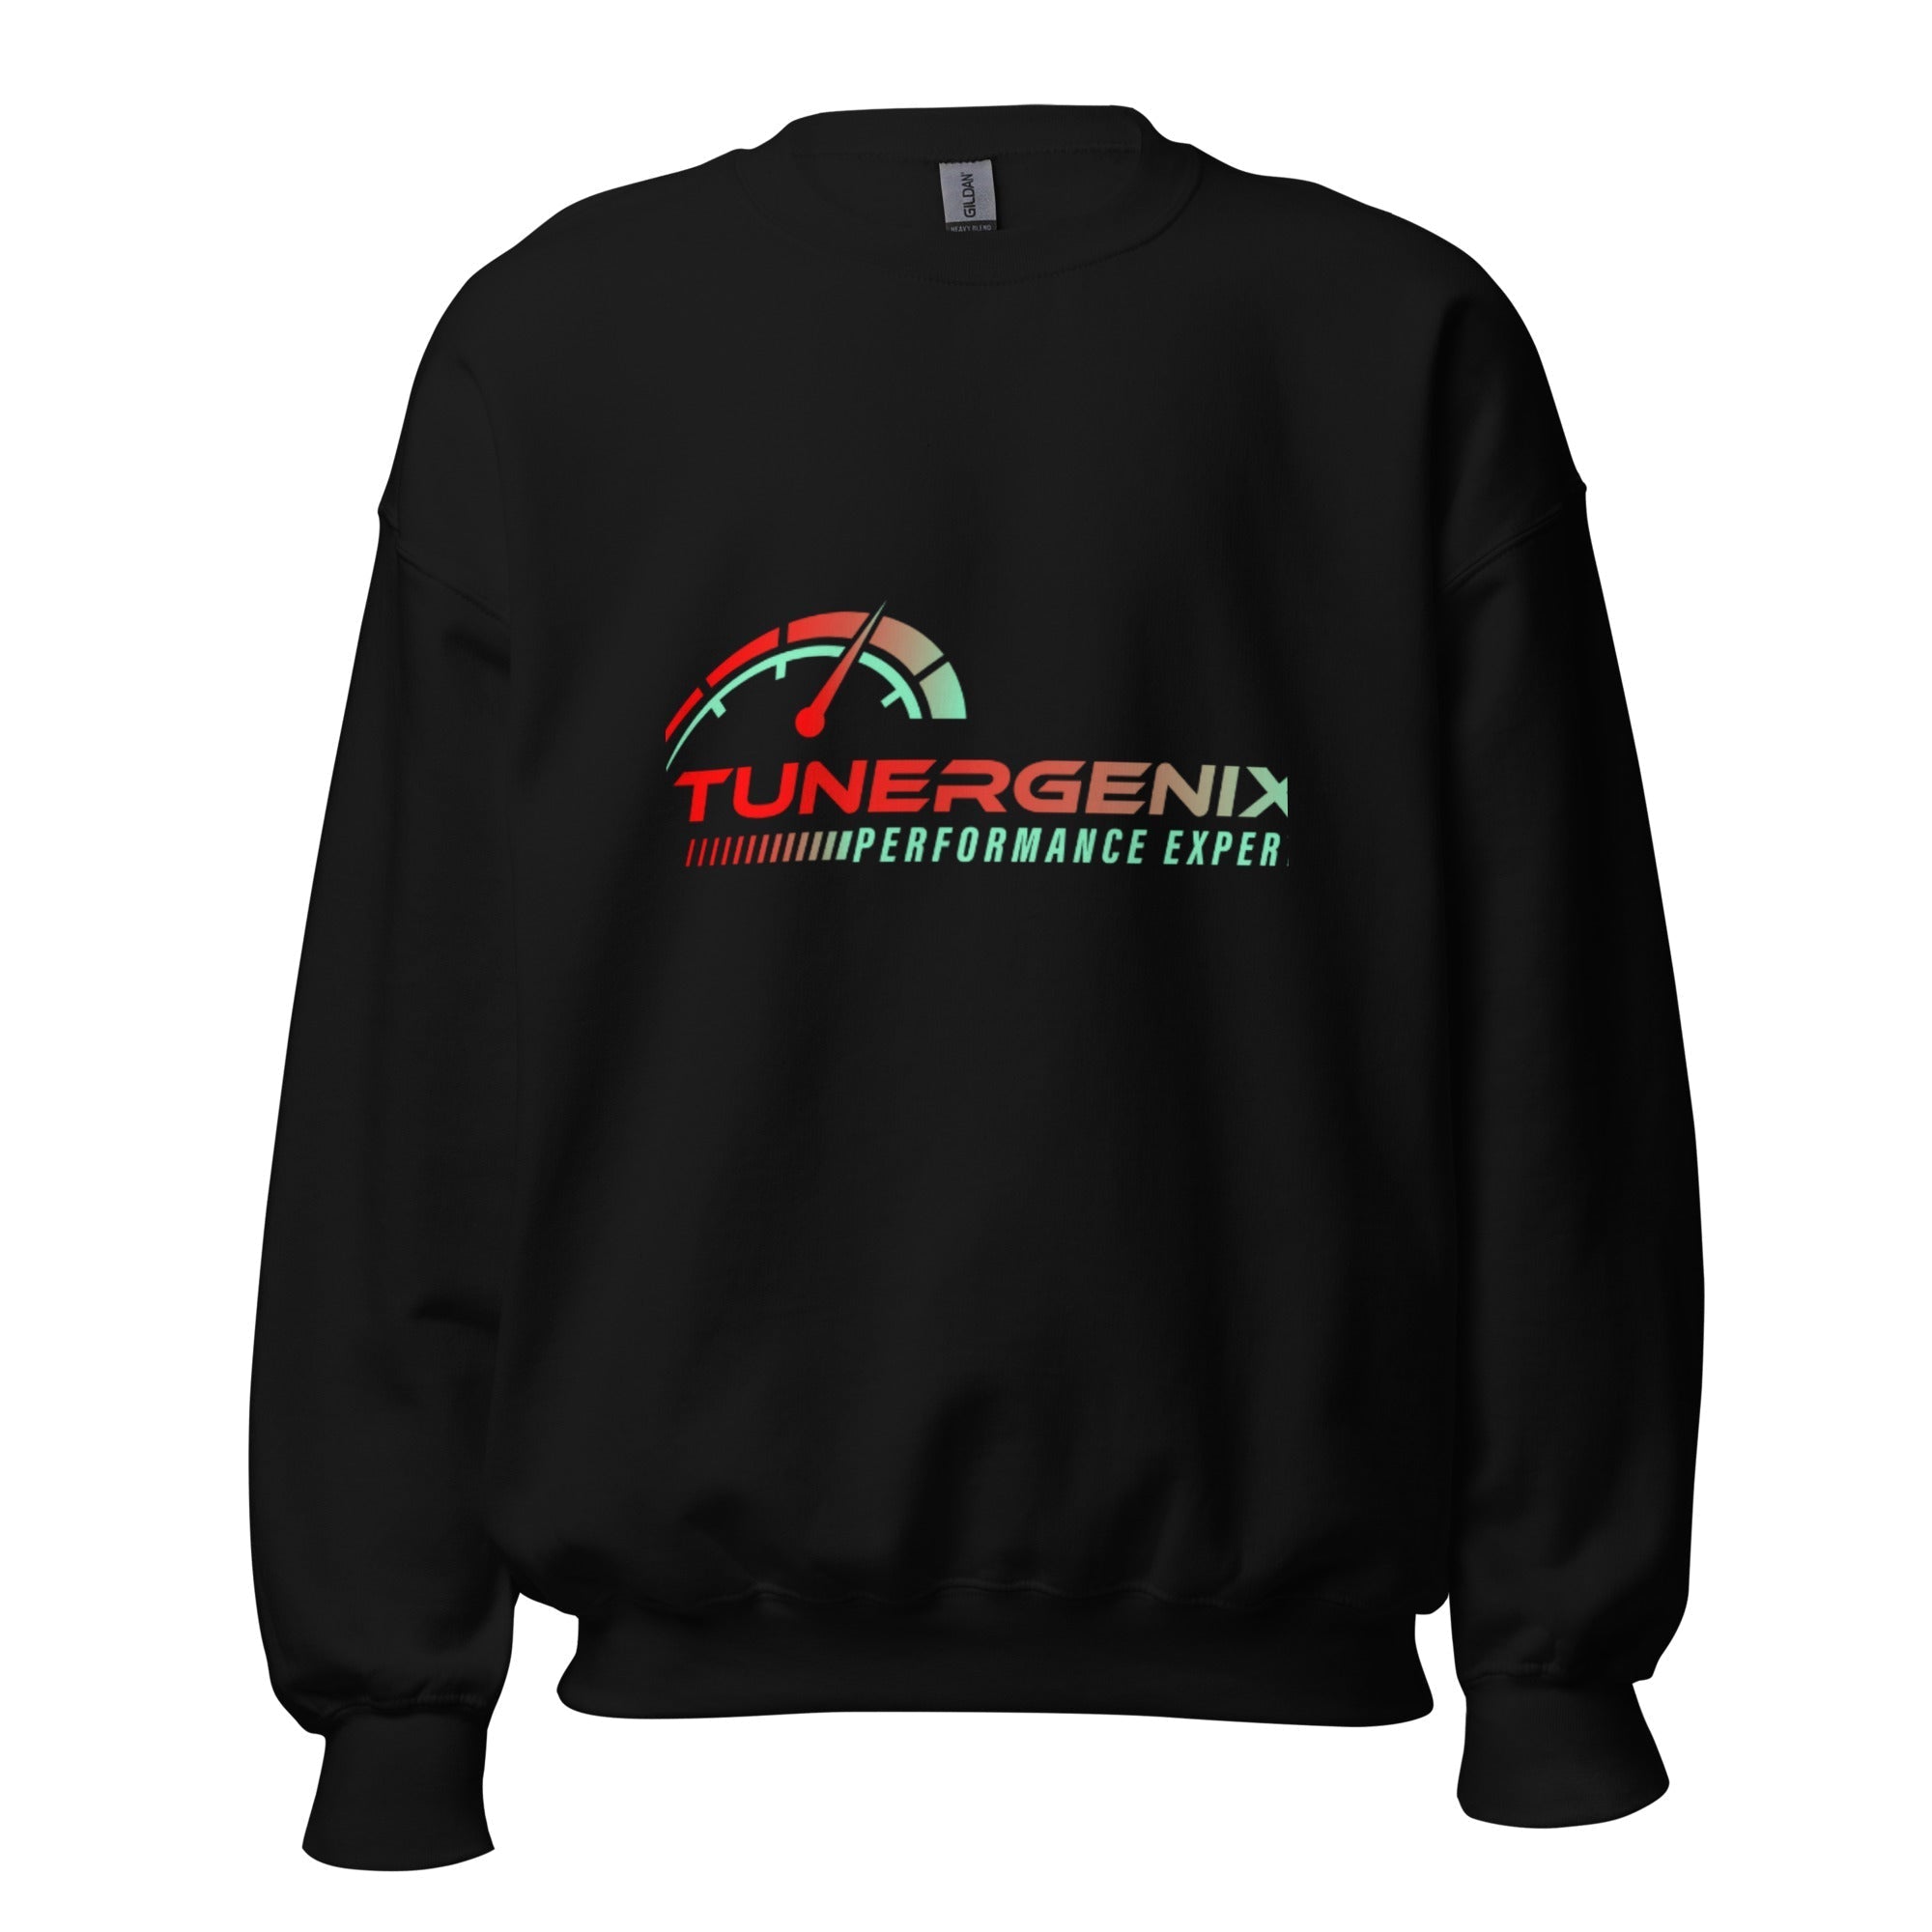 TunerGenix Apparel/Misc S TunerGenix Black Unisex Sweatshirt